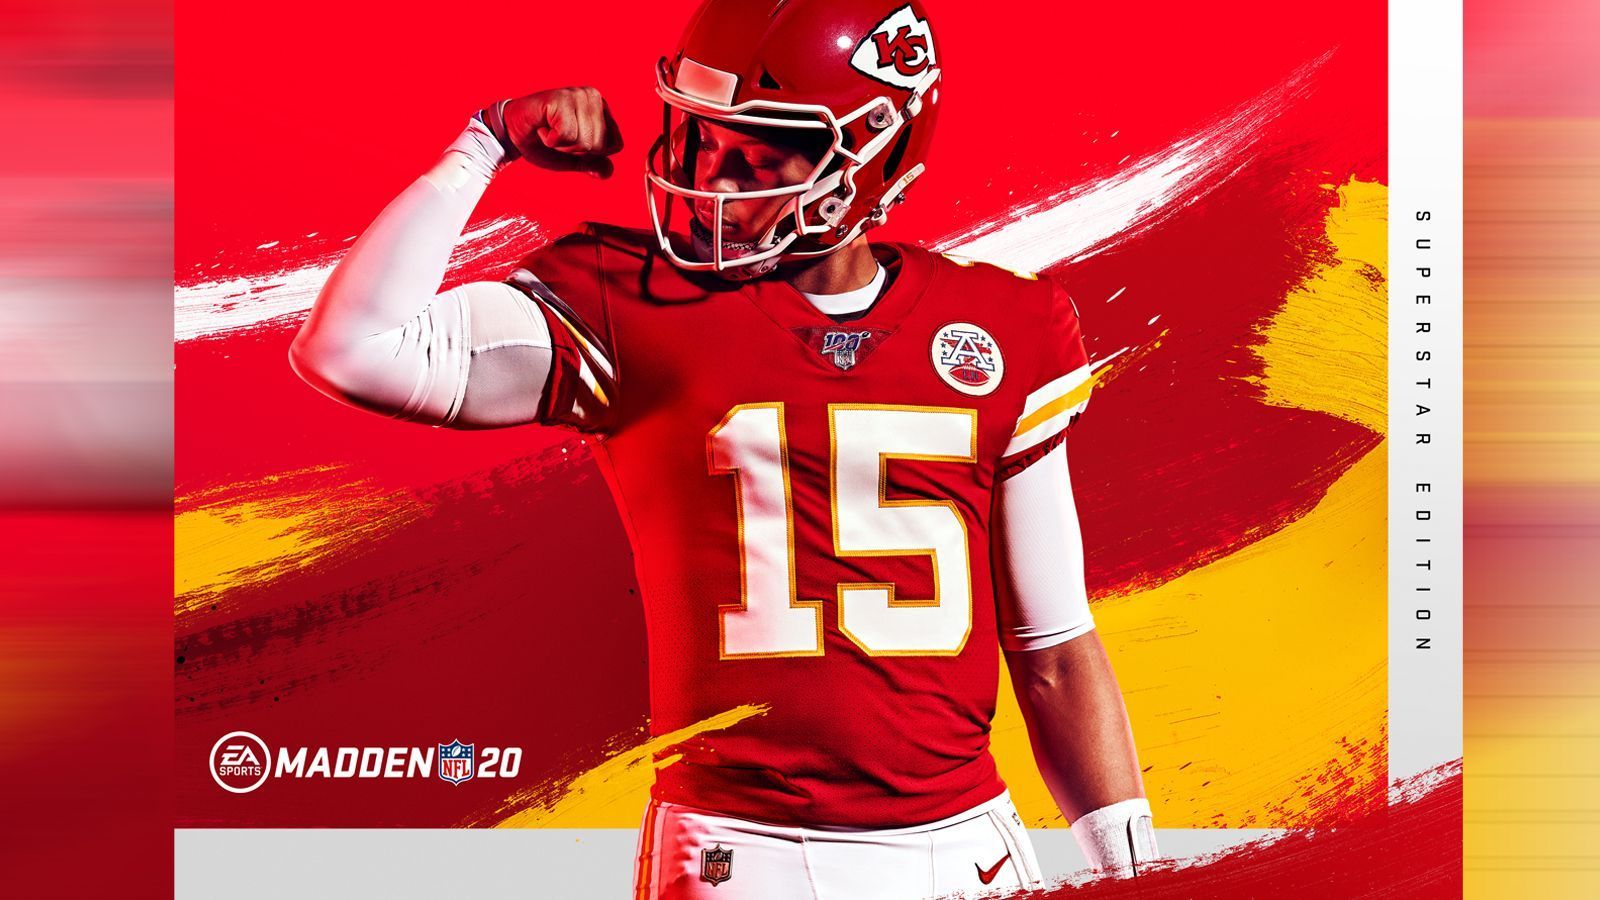 
                <strong>Madden NFL 20: Das ist neu in der Football-Simulation</strong><br>
                Am 2. August 2019 erscheint mit "MADDEN NFL 2019" der neuste Teil der Football-Simulation aus dem Hause EA Sports. ran.de fasst die wichtigsten Neuerungen zusammen!
              